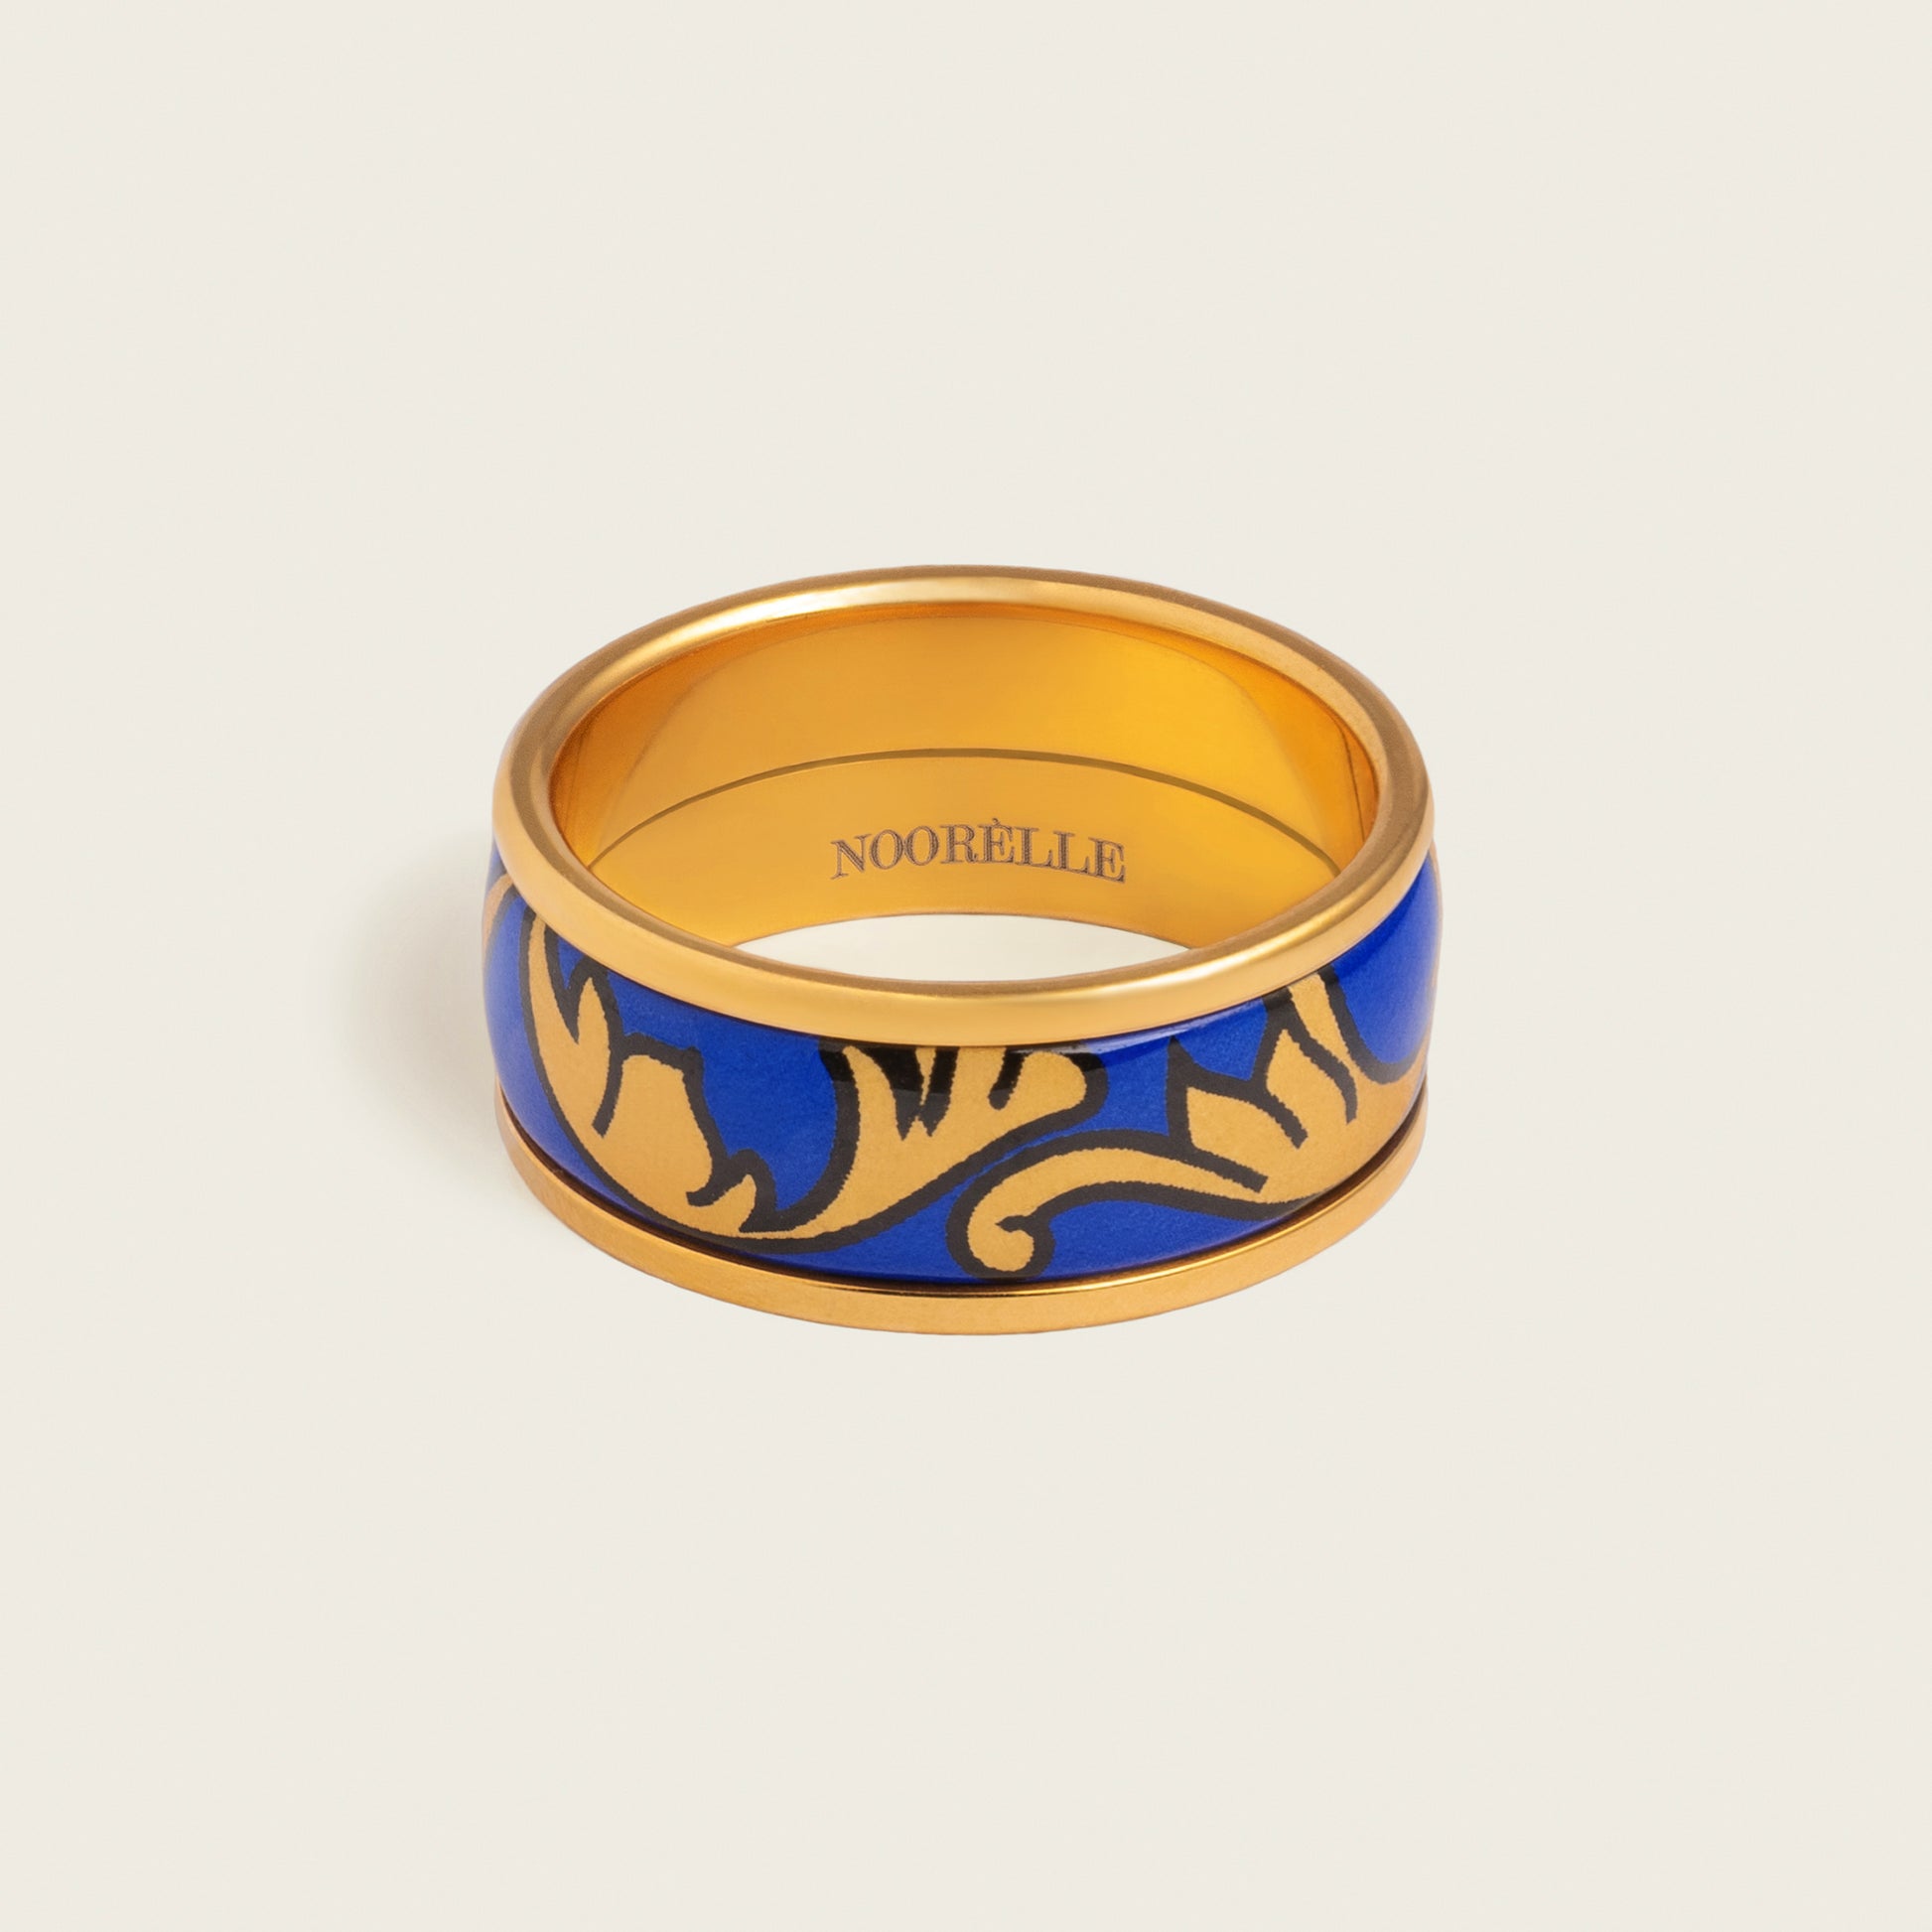 noorelle, elle ring, rings, jewellery, blue gold printed rings, rings for girl